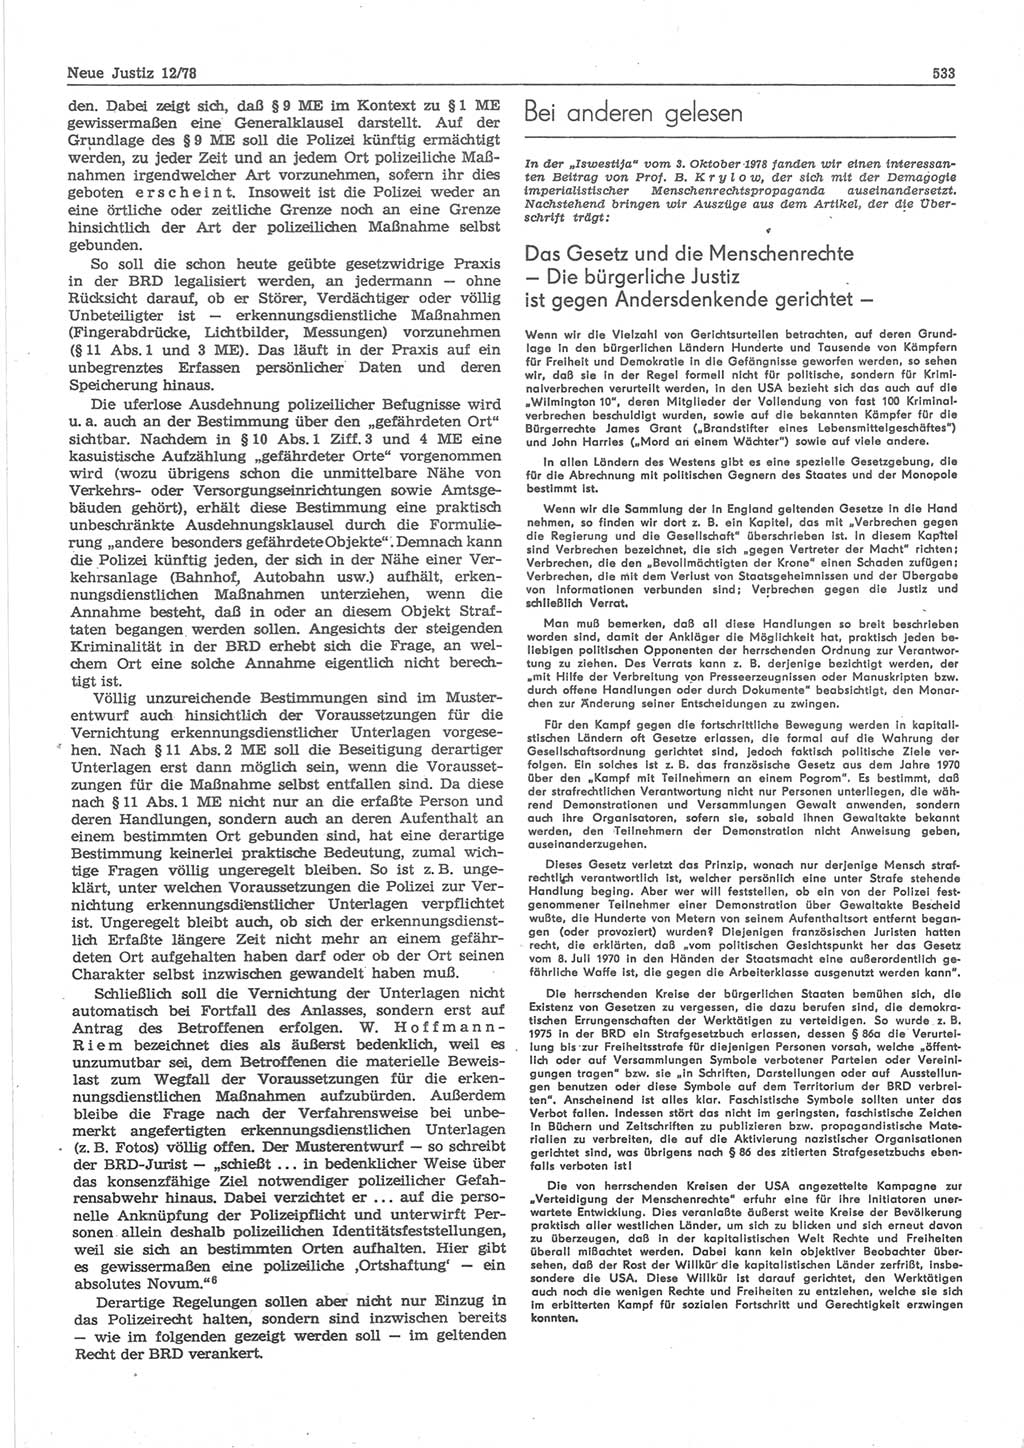 Neue Justiz (NJ), Zeitschrift für sozialistisches Recht und Gesetzlichkeit [Deutsche Demokratische Republik (DDR)], 32. Jahrgang 1978, Seite 533 (NJ DDR 1978, S. 533)